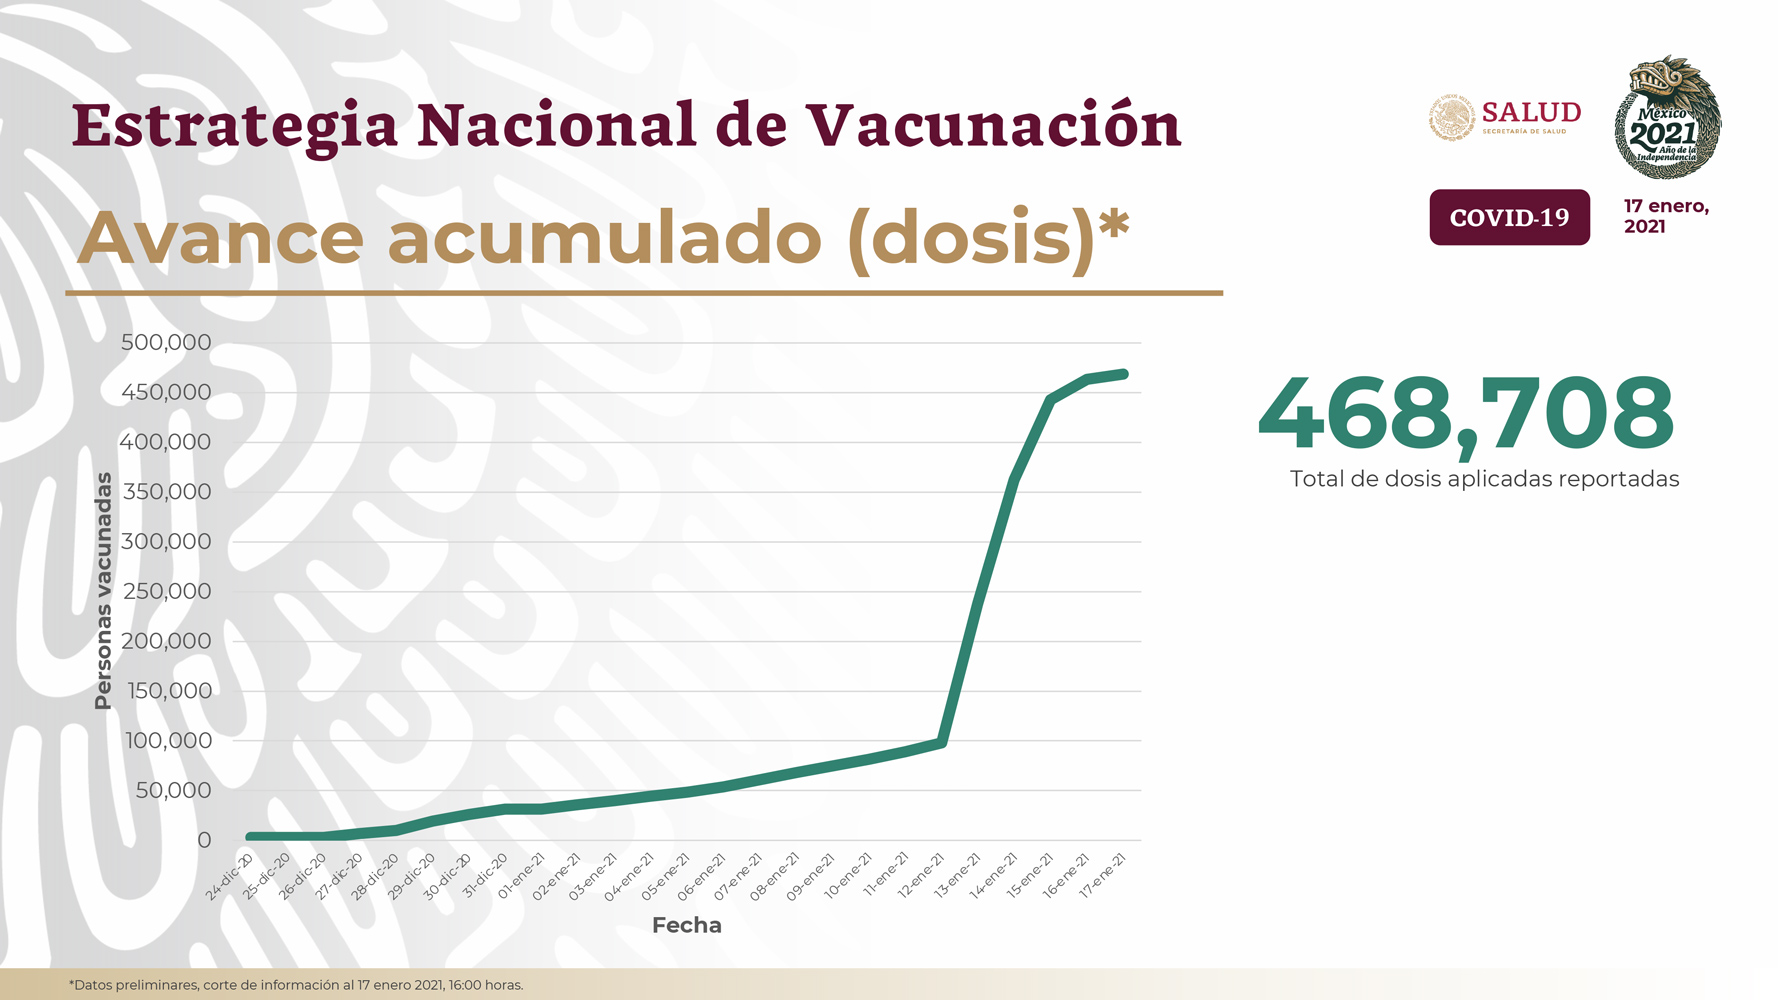 En total se han aplicado 468,708 vacunas contra COVID-19 en México hasta este domingo 17 de enero de 2021 (Foto: SSa)